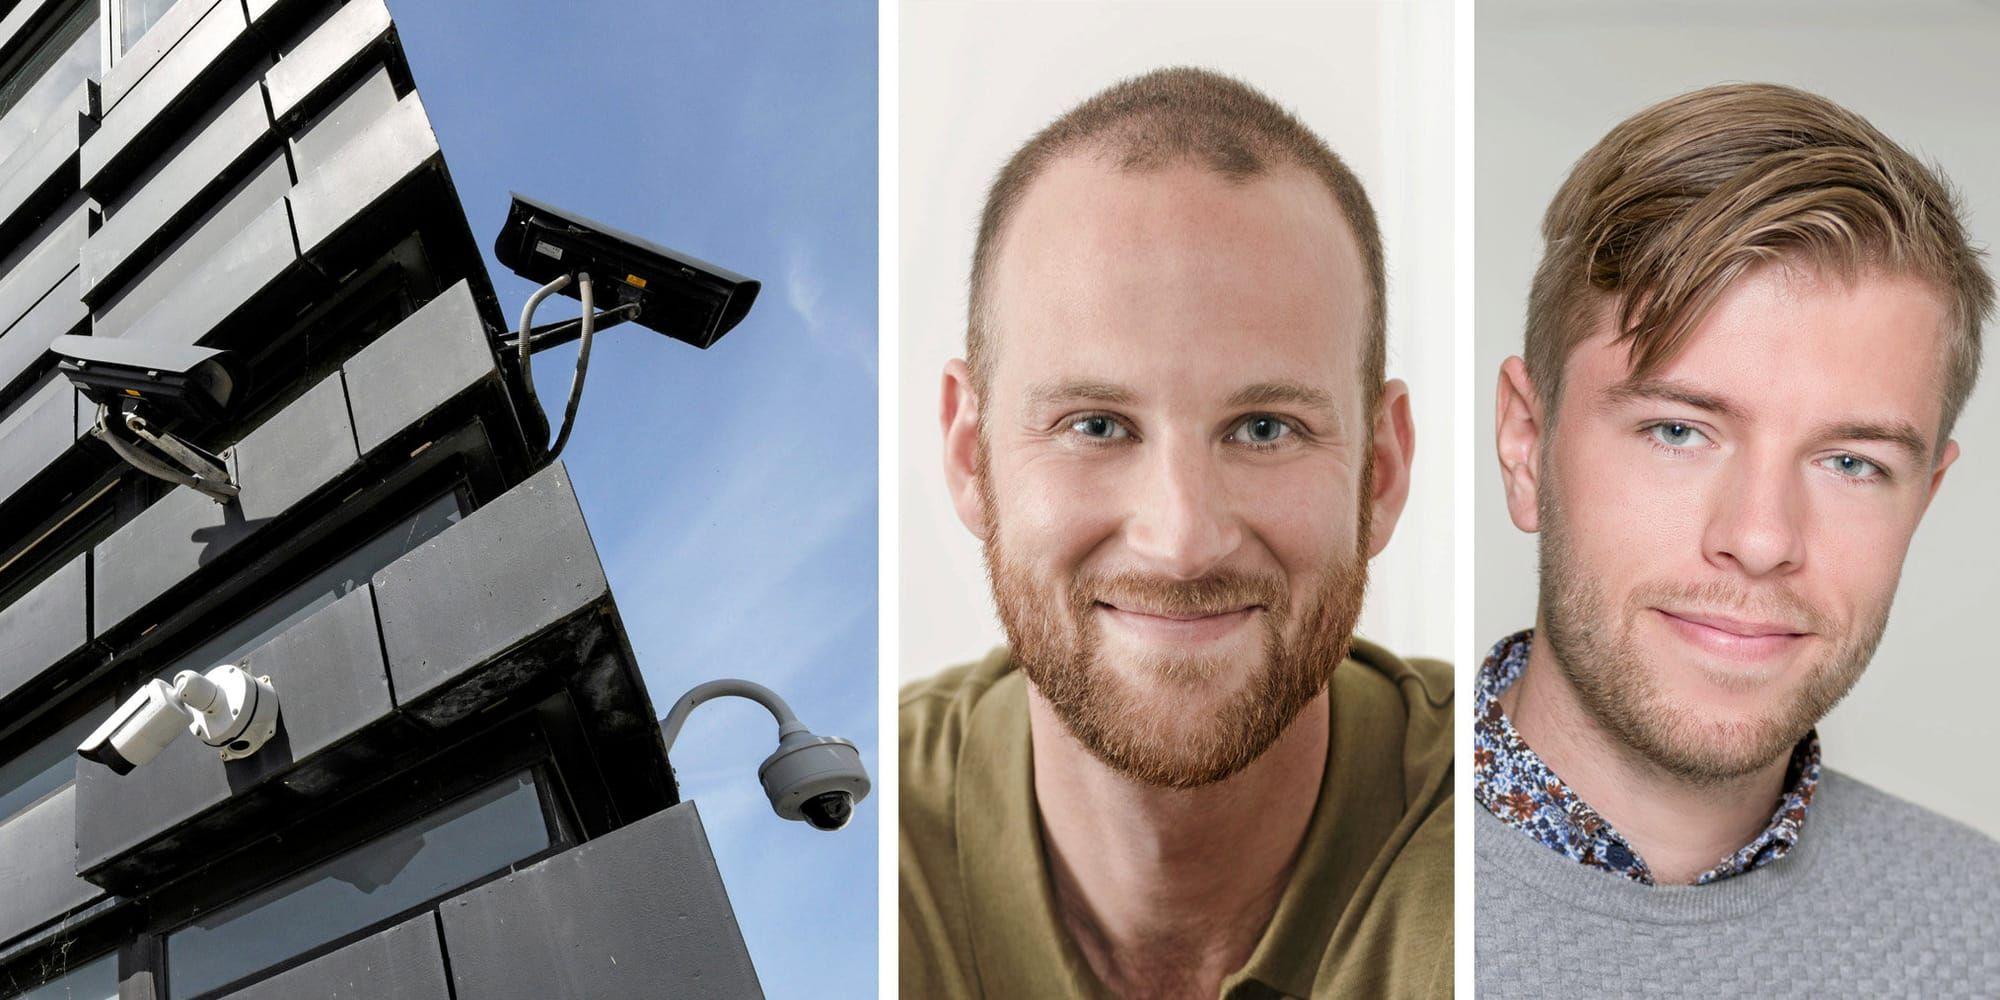 Datainspektionens slutsats att kommunala bostadsbolag behöver tillstånd för kameraövervakning är felaktig, skriver David Schreiber och Daniel Maxstad.